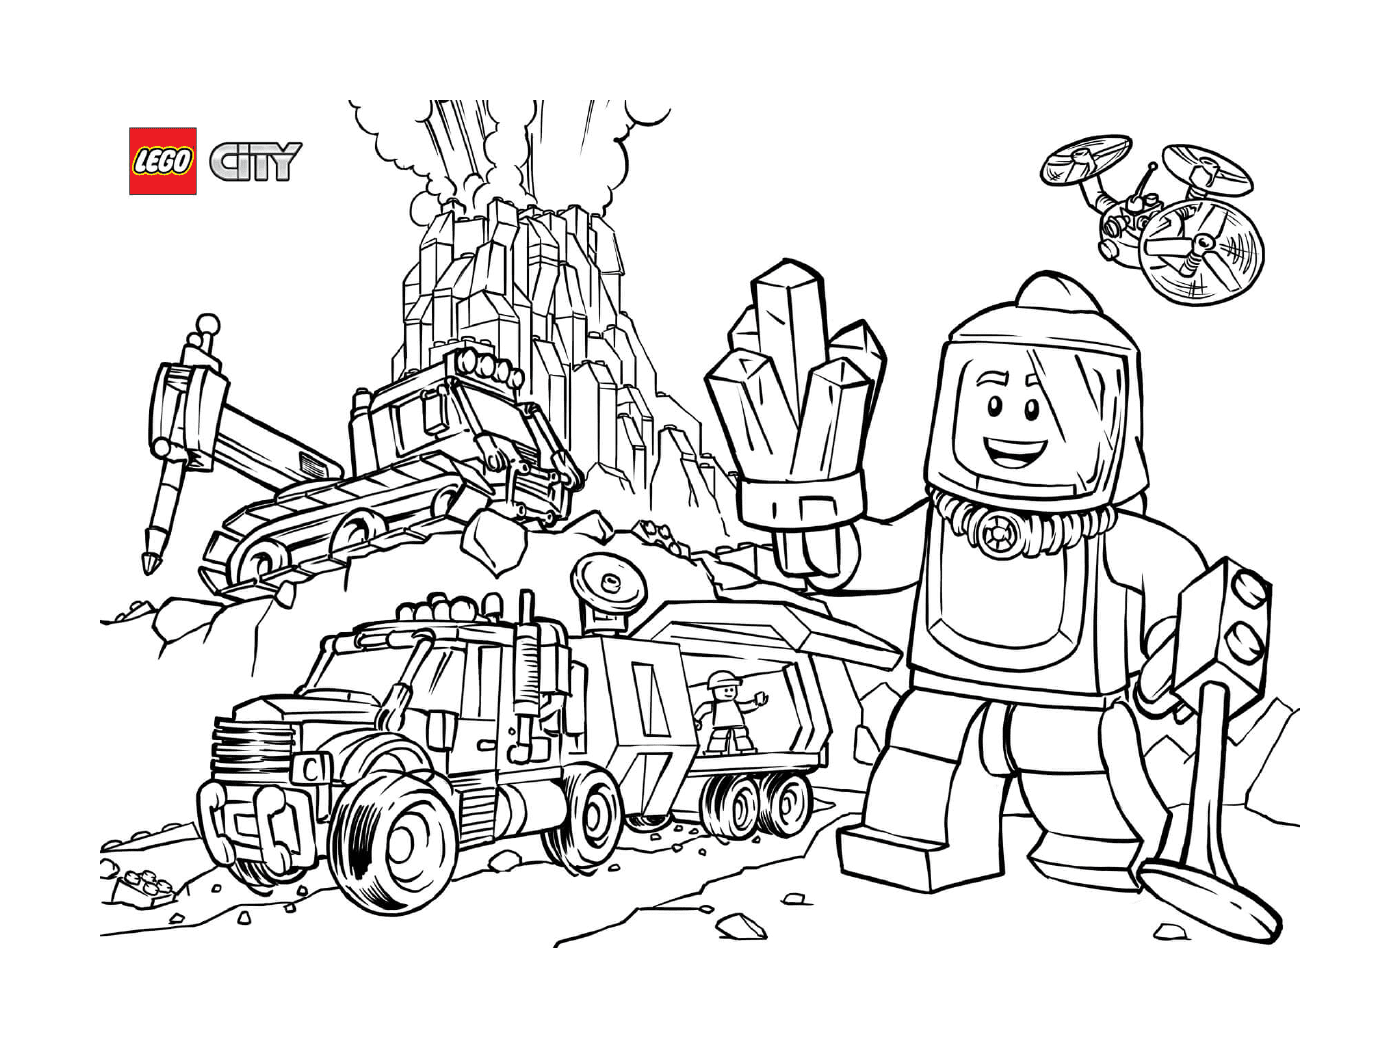  Esploratori del vulcano Lego City 